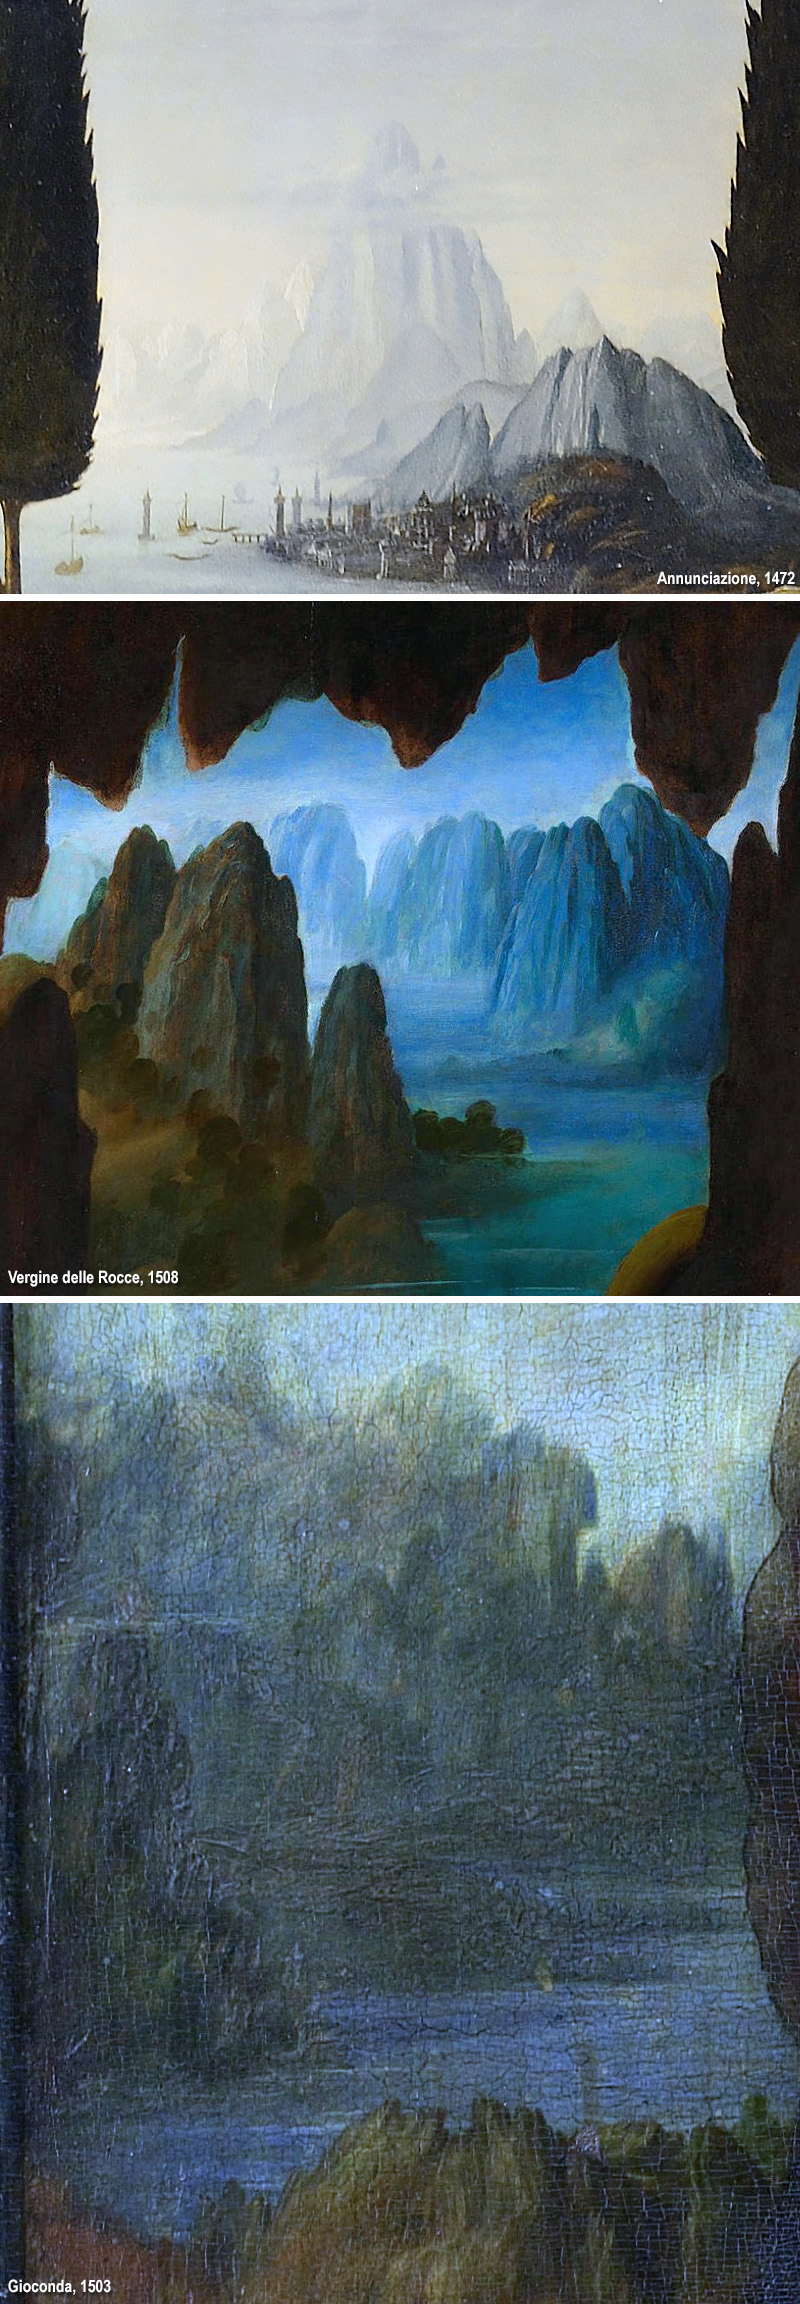 Leonardo paesaggi